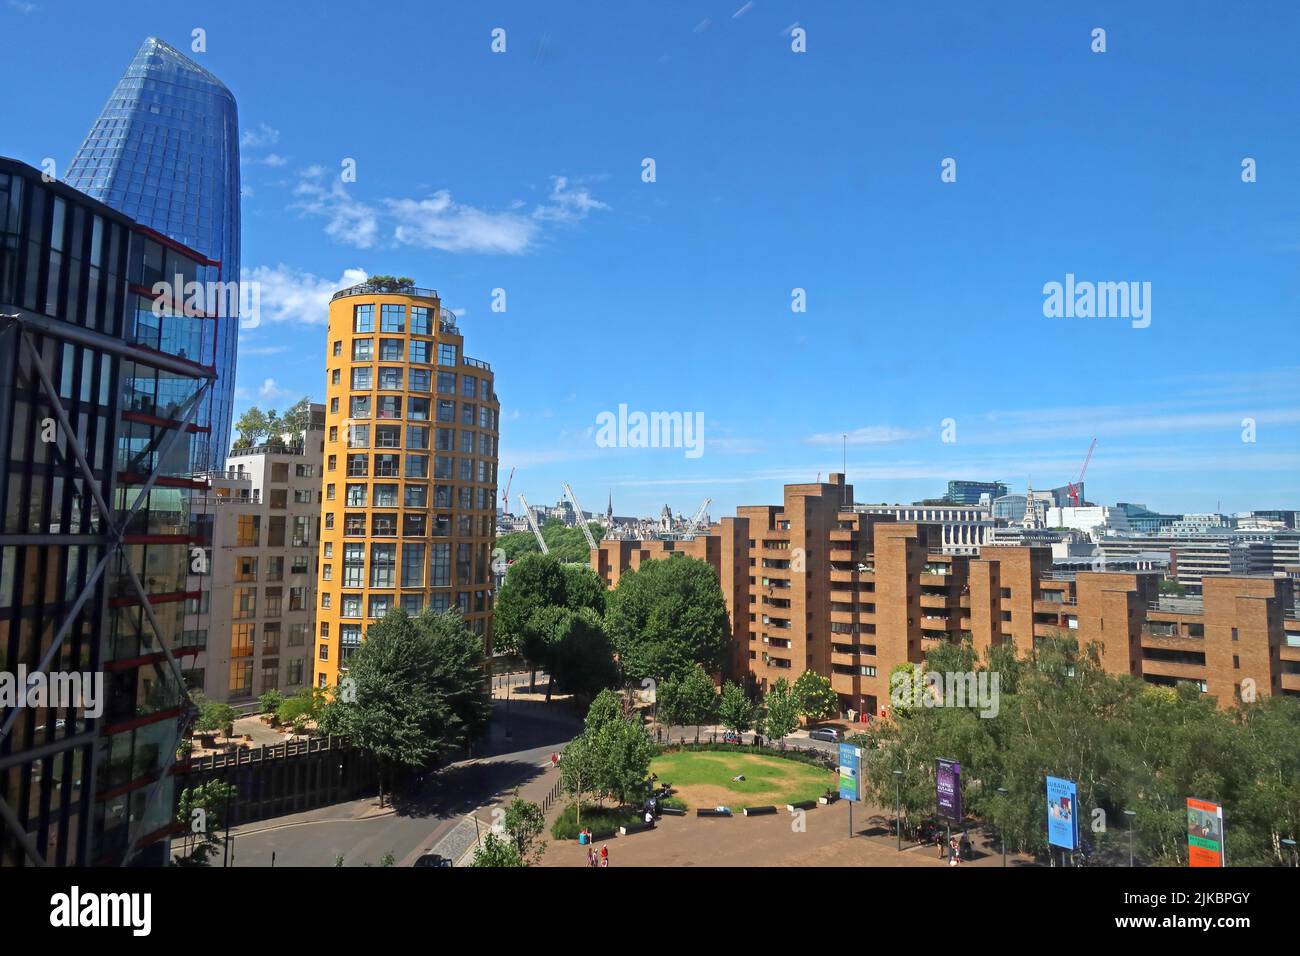 Wohnblock in der Hopton Street, Castle Yard, Southwark, London, überblickt von der Tate Modern bankside, London, England, Großbritannien Stockfoto